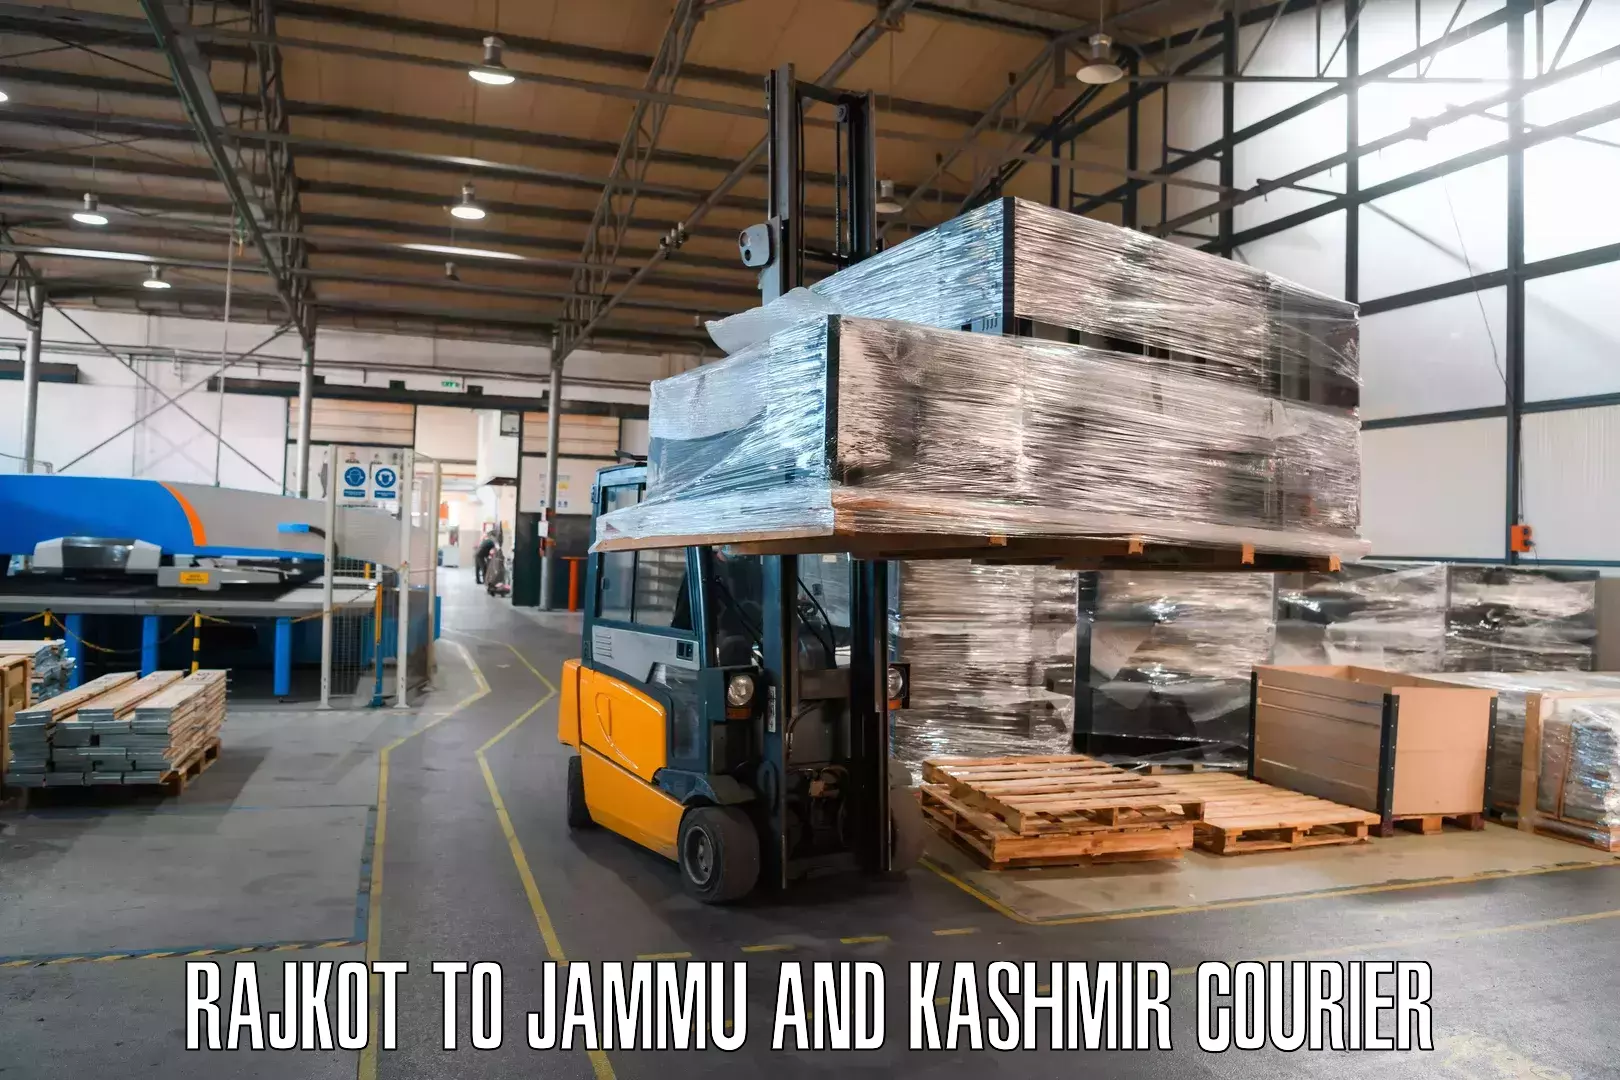 Premium courier services Rajkot to IIT Jammu